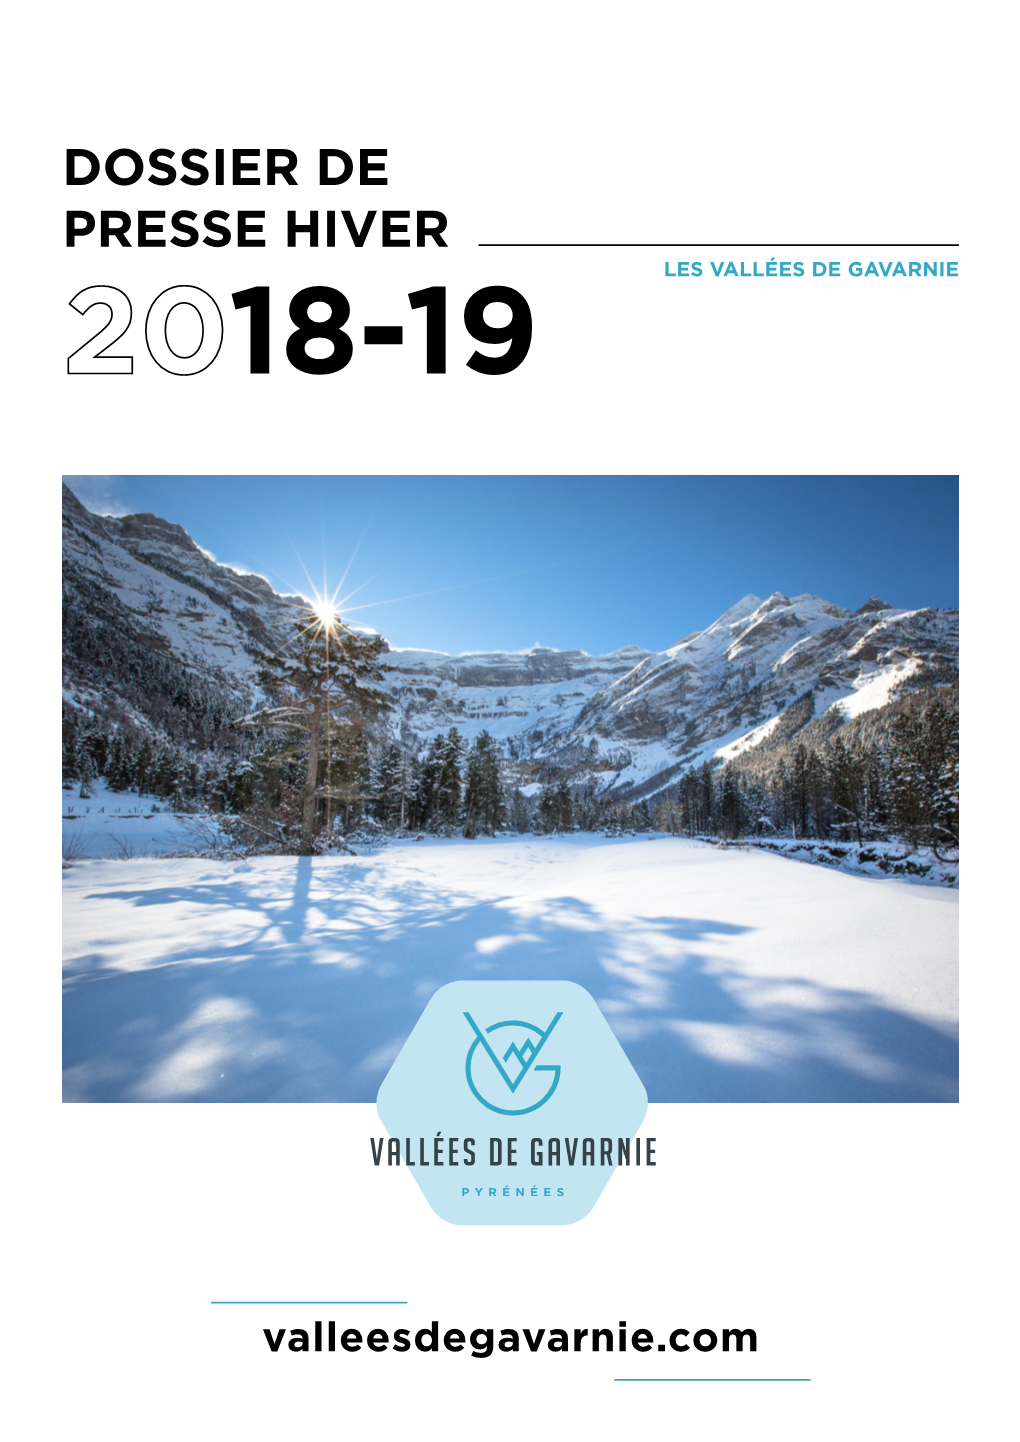 Dossier De Presse Hiver Les Vallées De Gavarnie 18-19